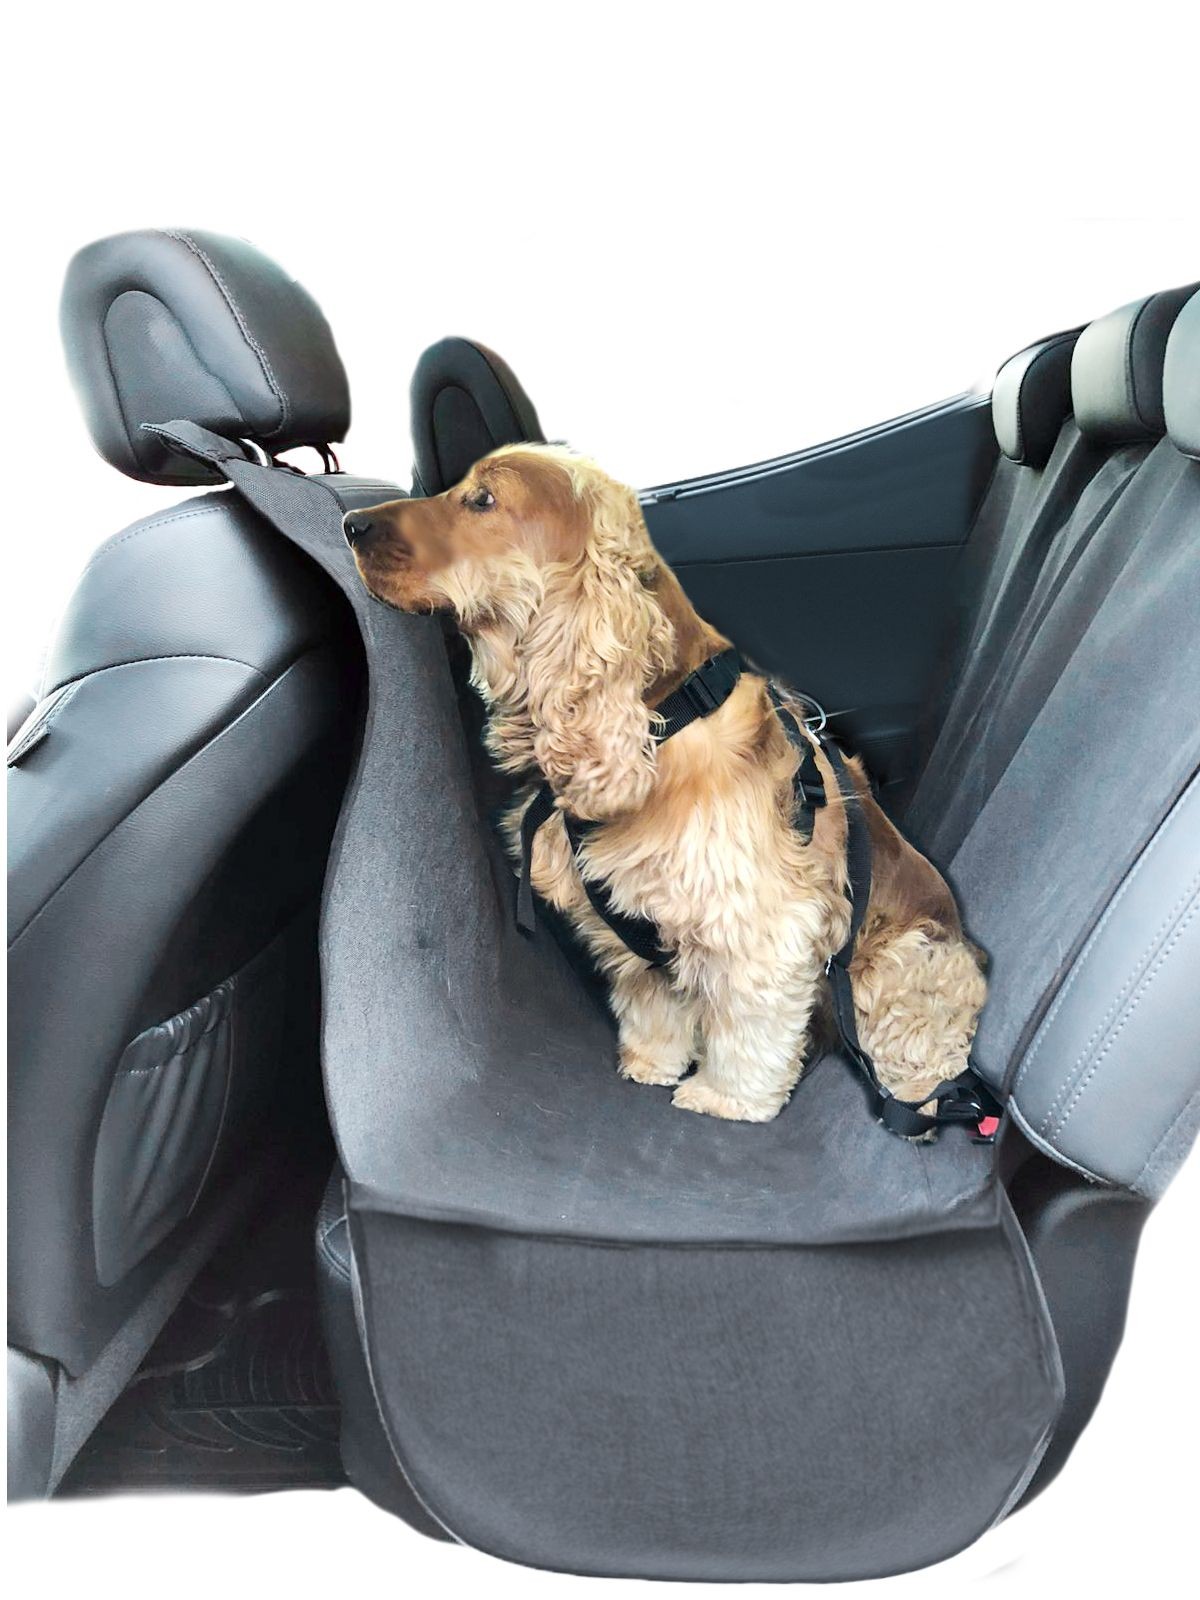 housse de protection pour coffre contre les poils de chien. Housses de  protection pour sièges et coffre de voiture et autres véhicules.